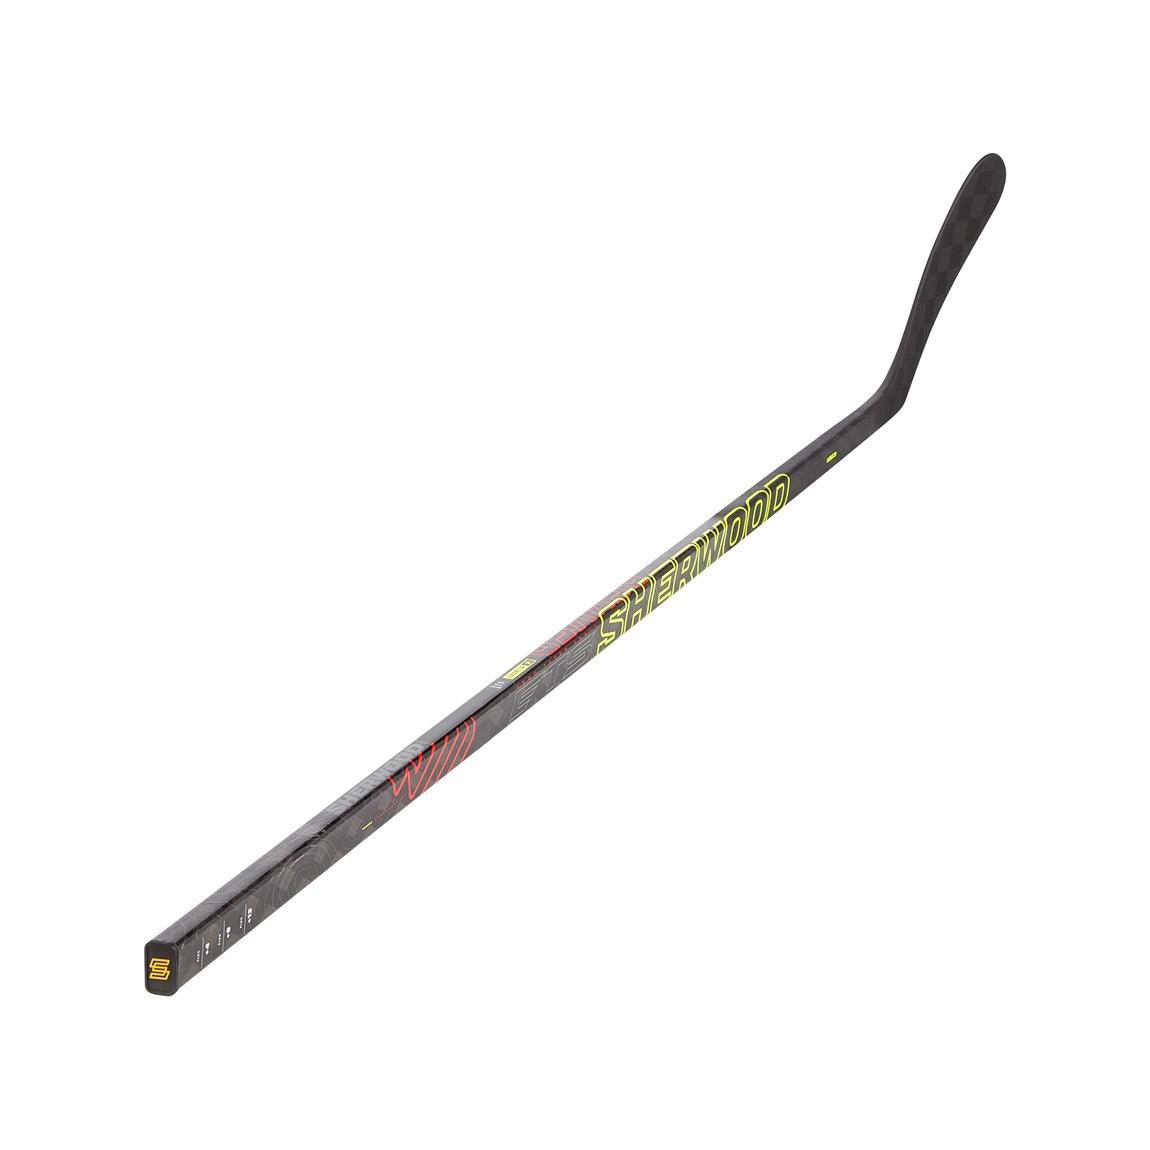 Sherwood Rekker Legend 2 Hockey Stick 